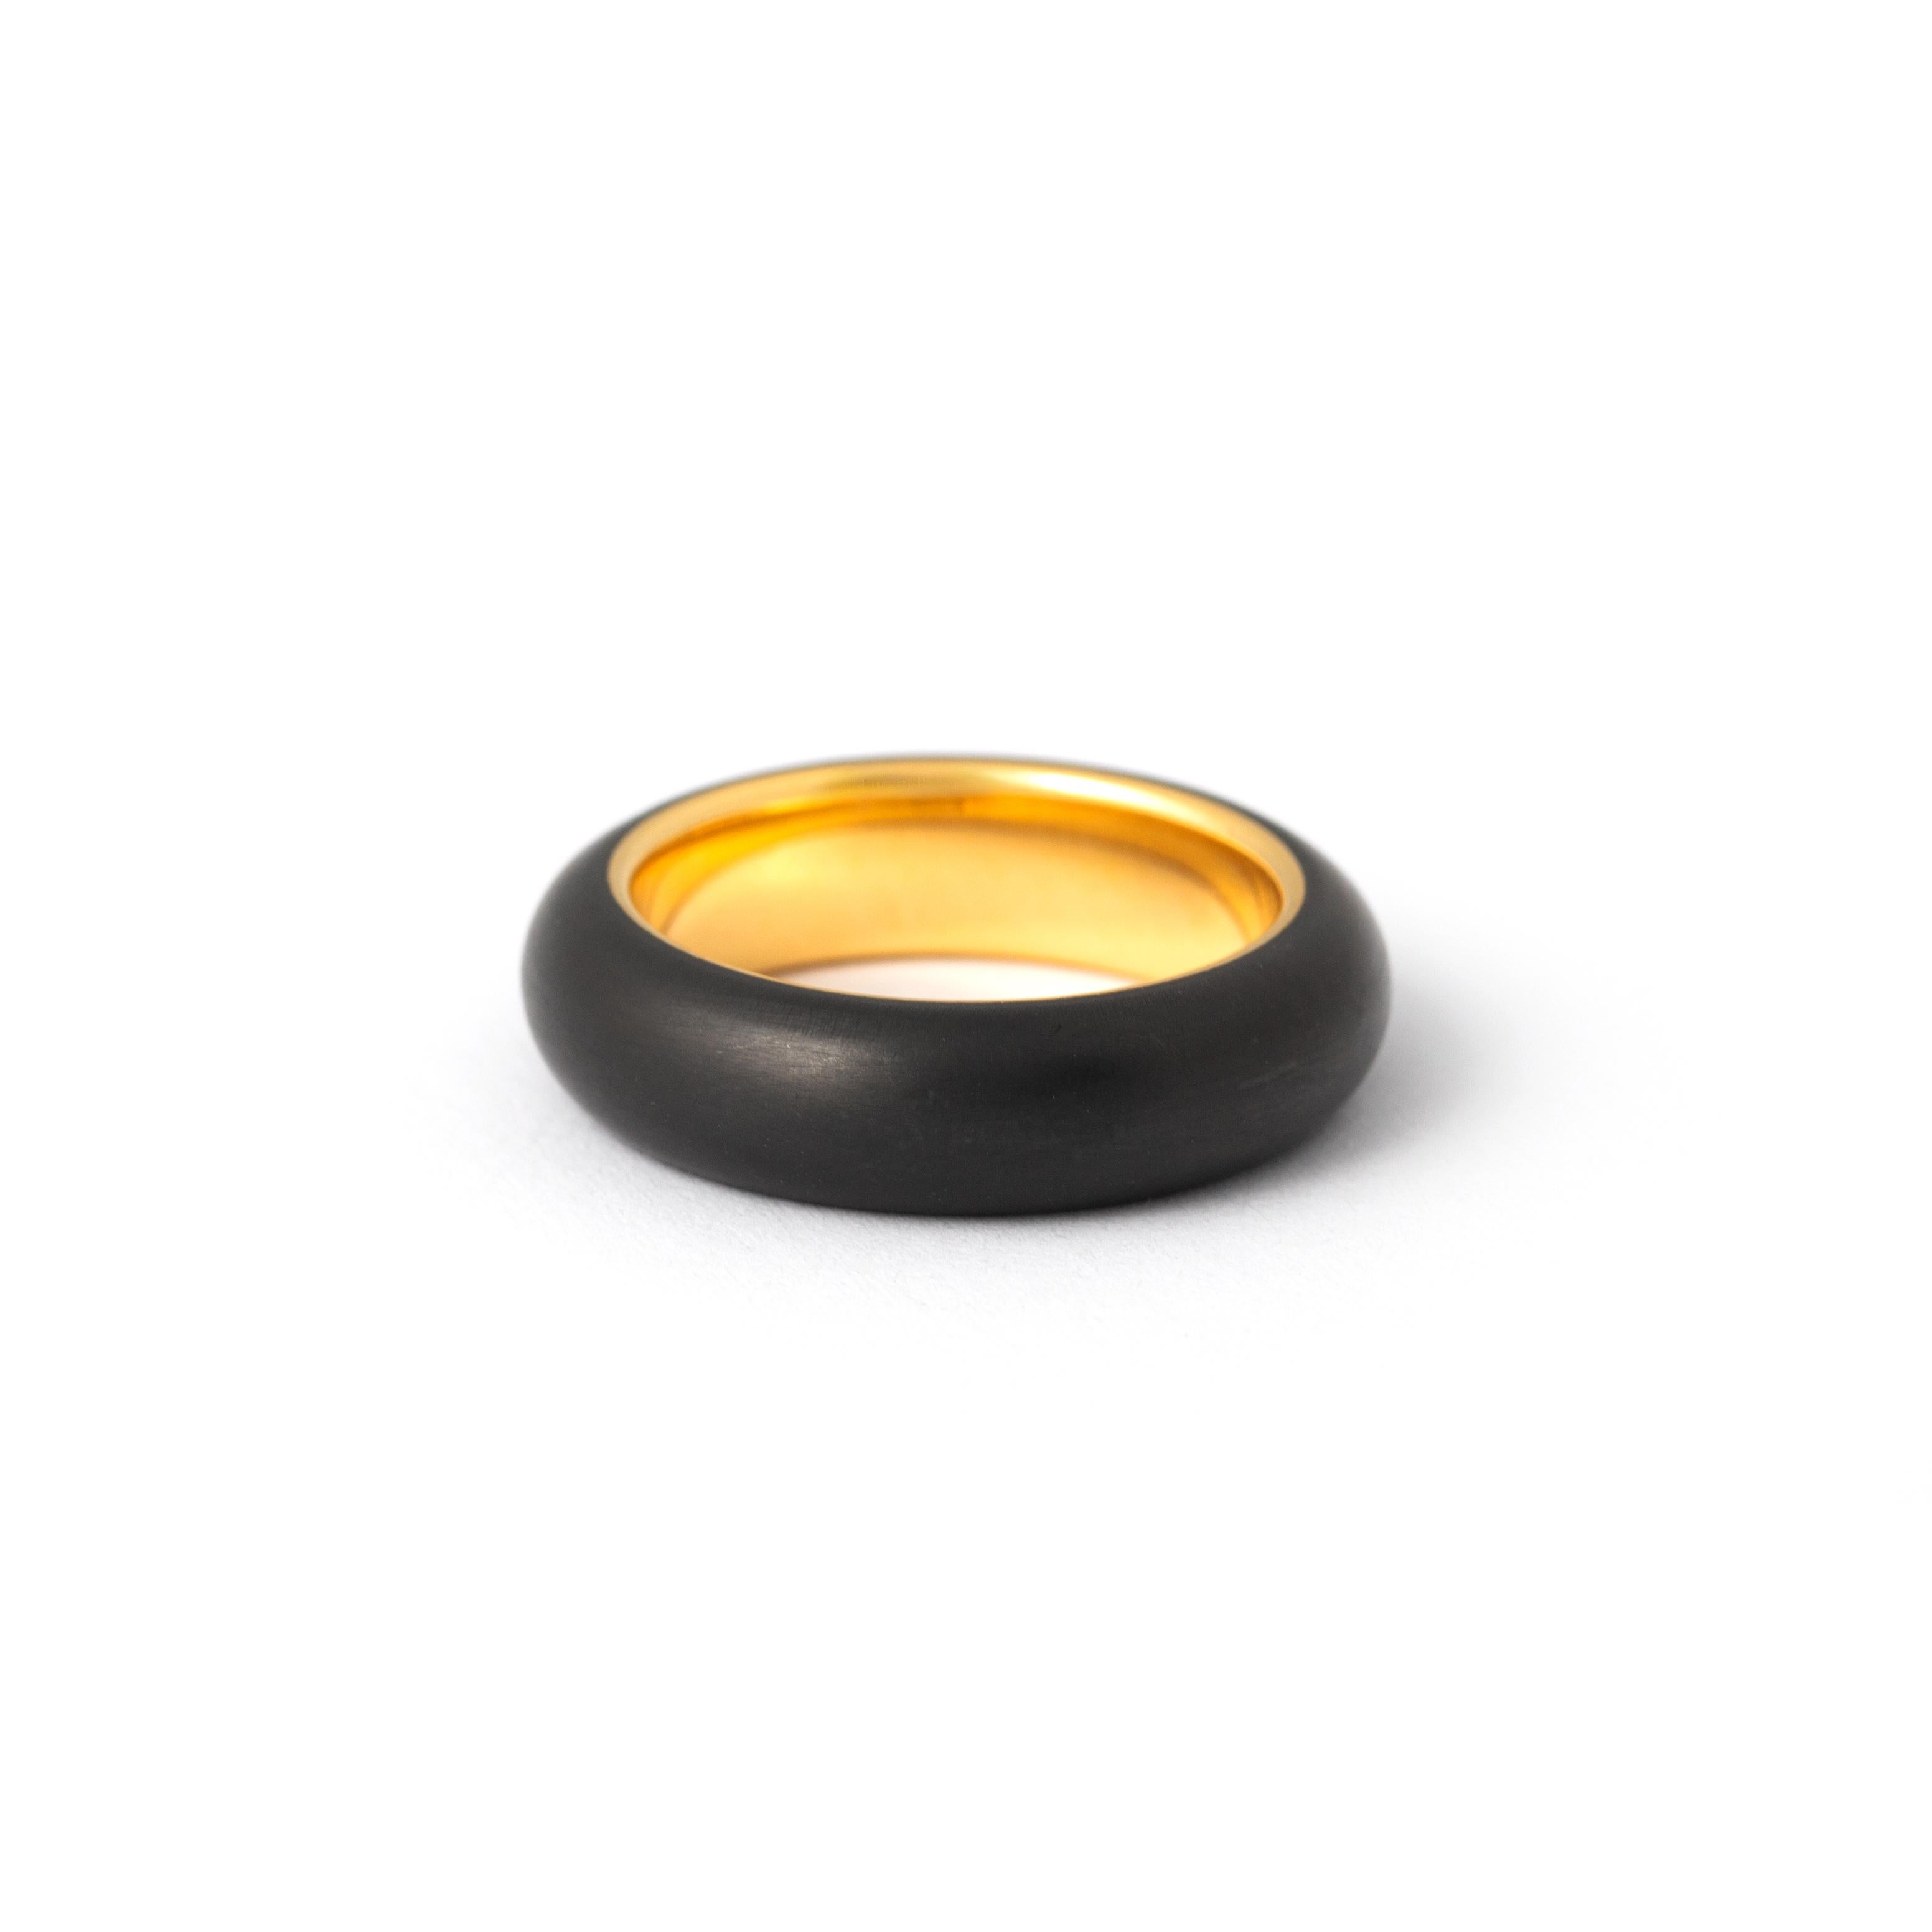 Diamant Gold 18K und Eisen Ring.

Größe: 54
Gesamtgewicht: 8,49 Gramm
